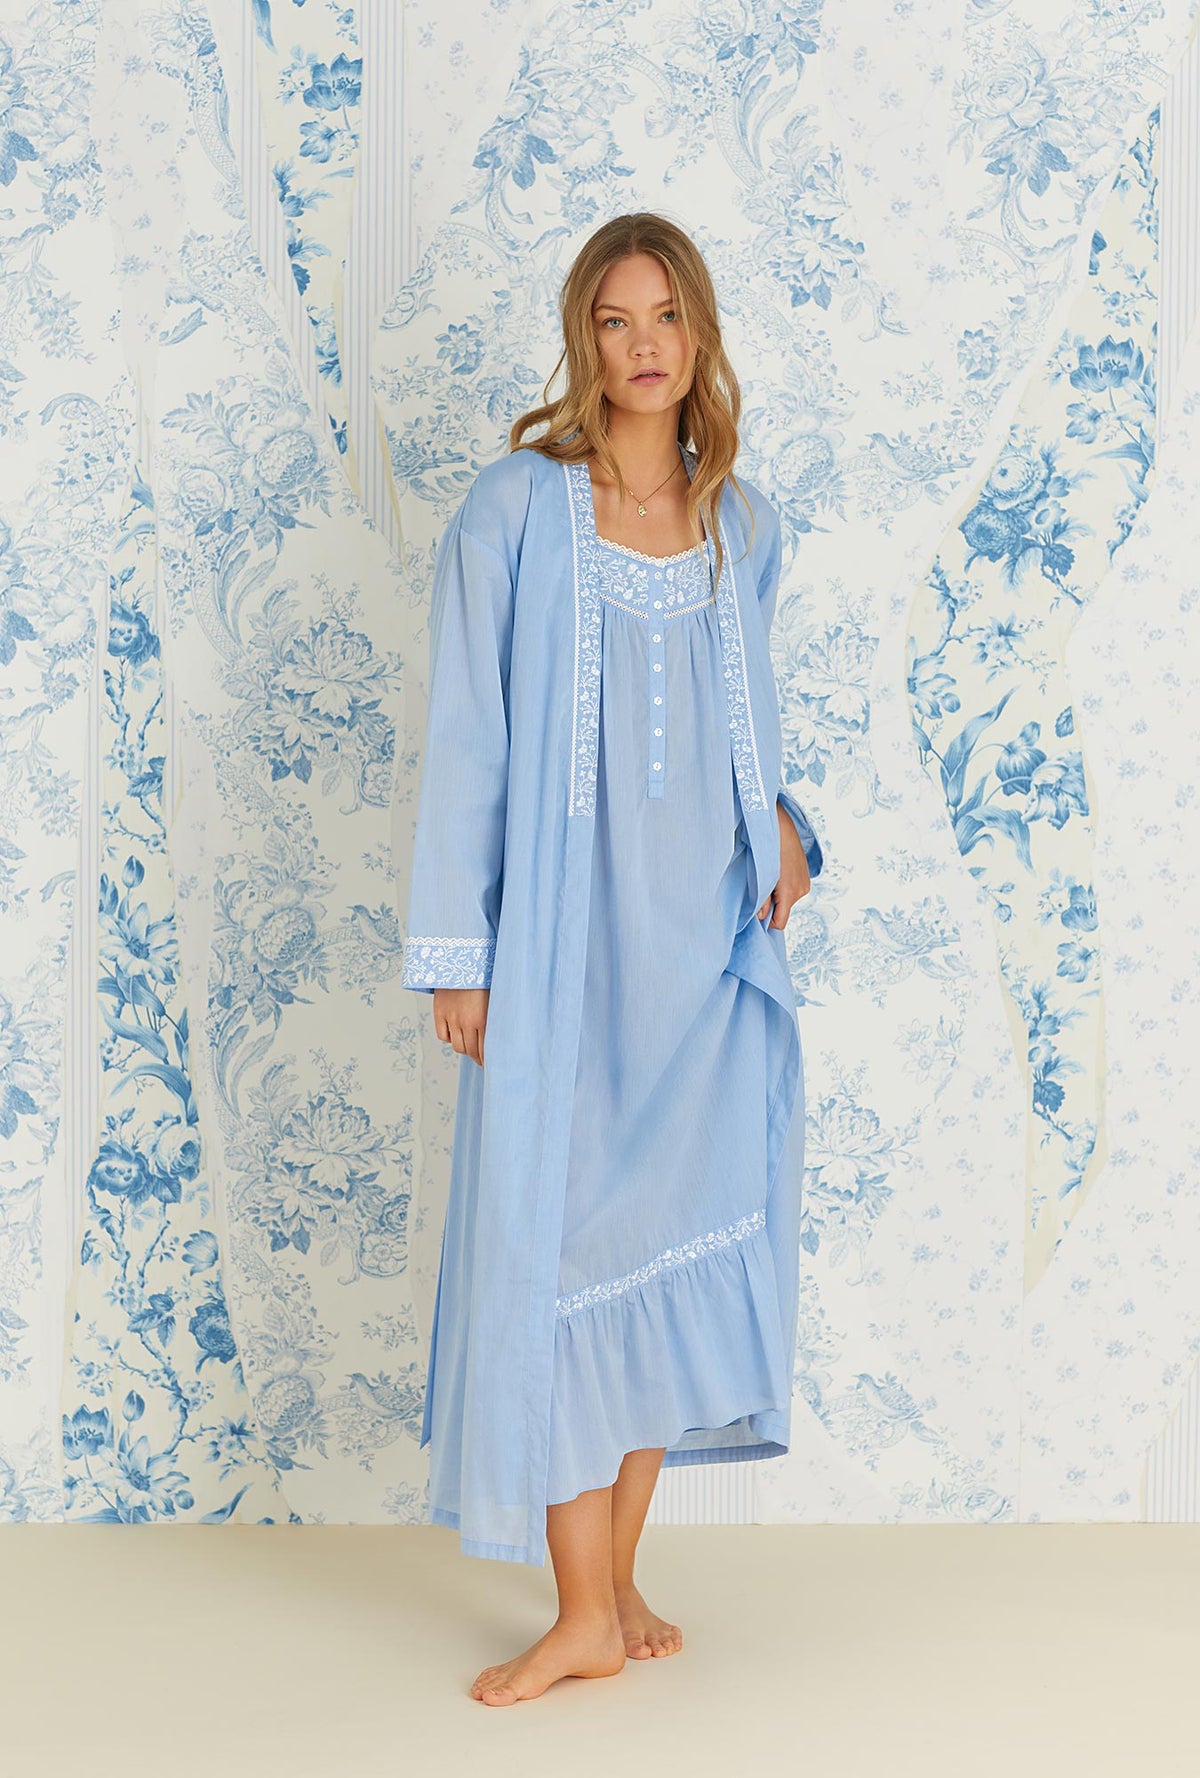 A lady wearing sleeveless blue cotton chambray genevieve nightdress.